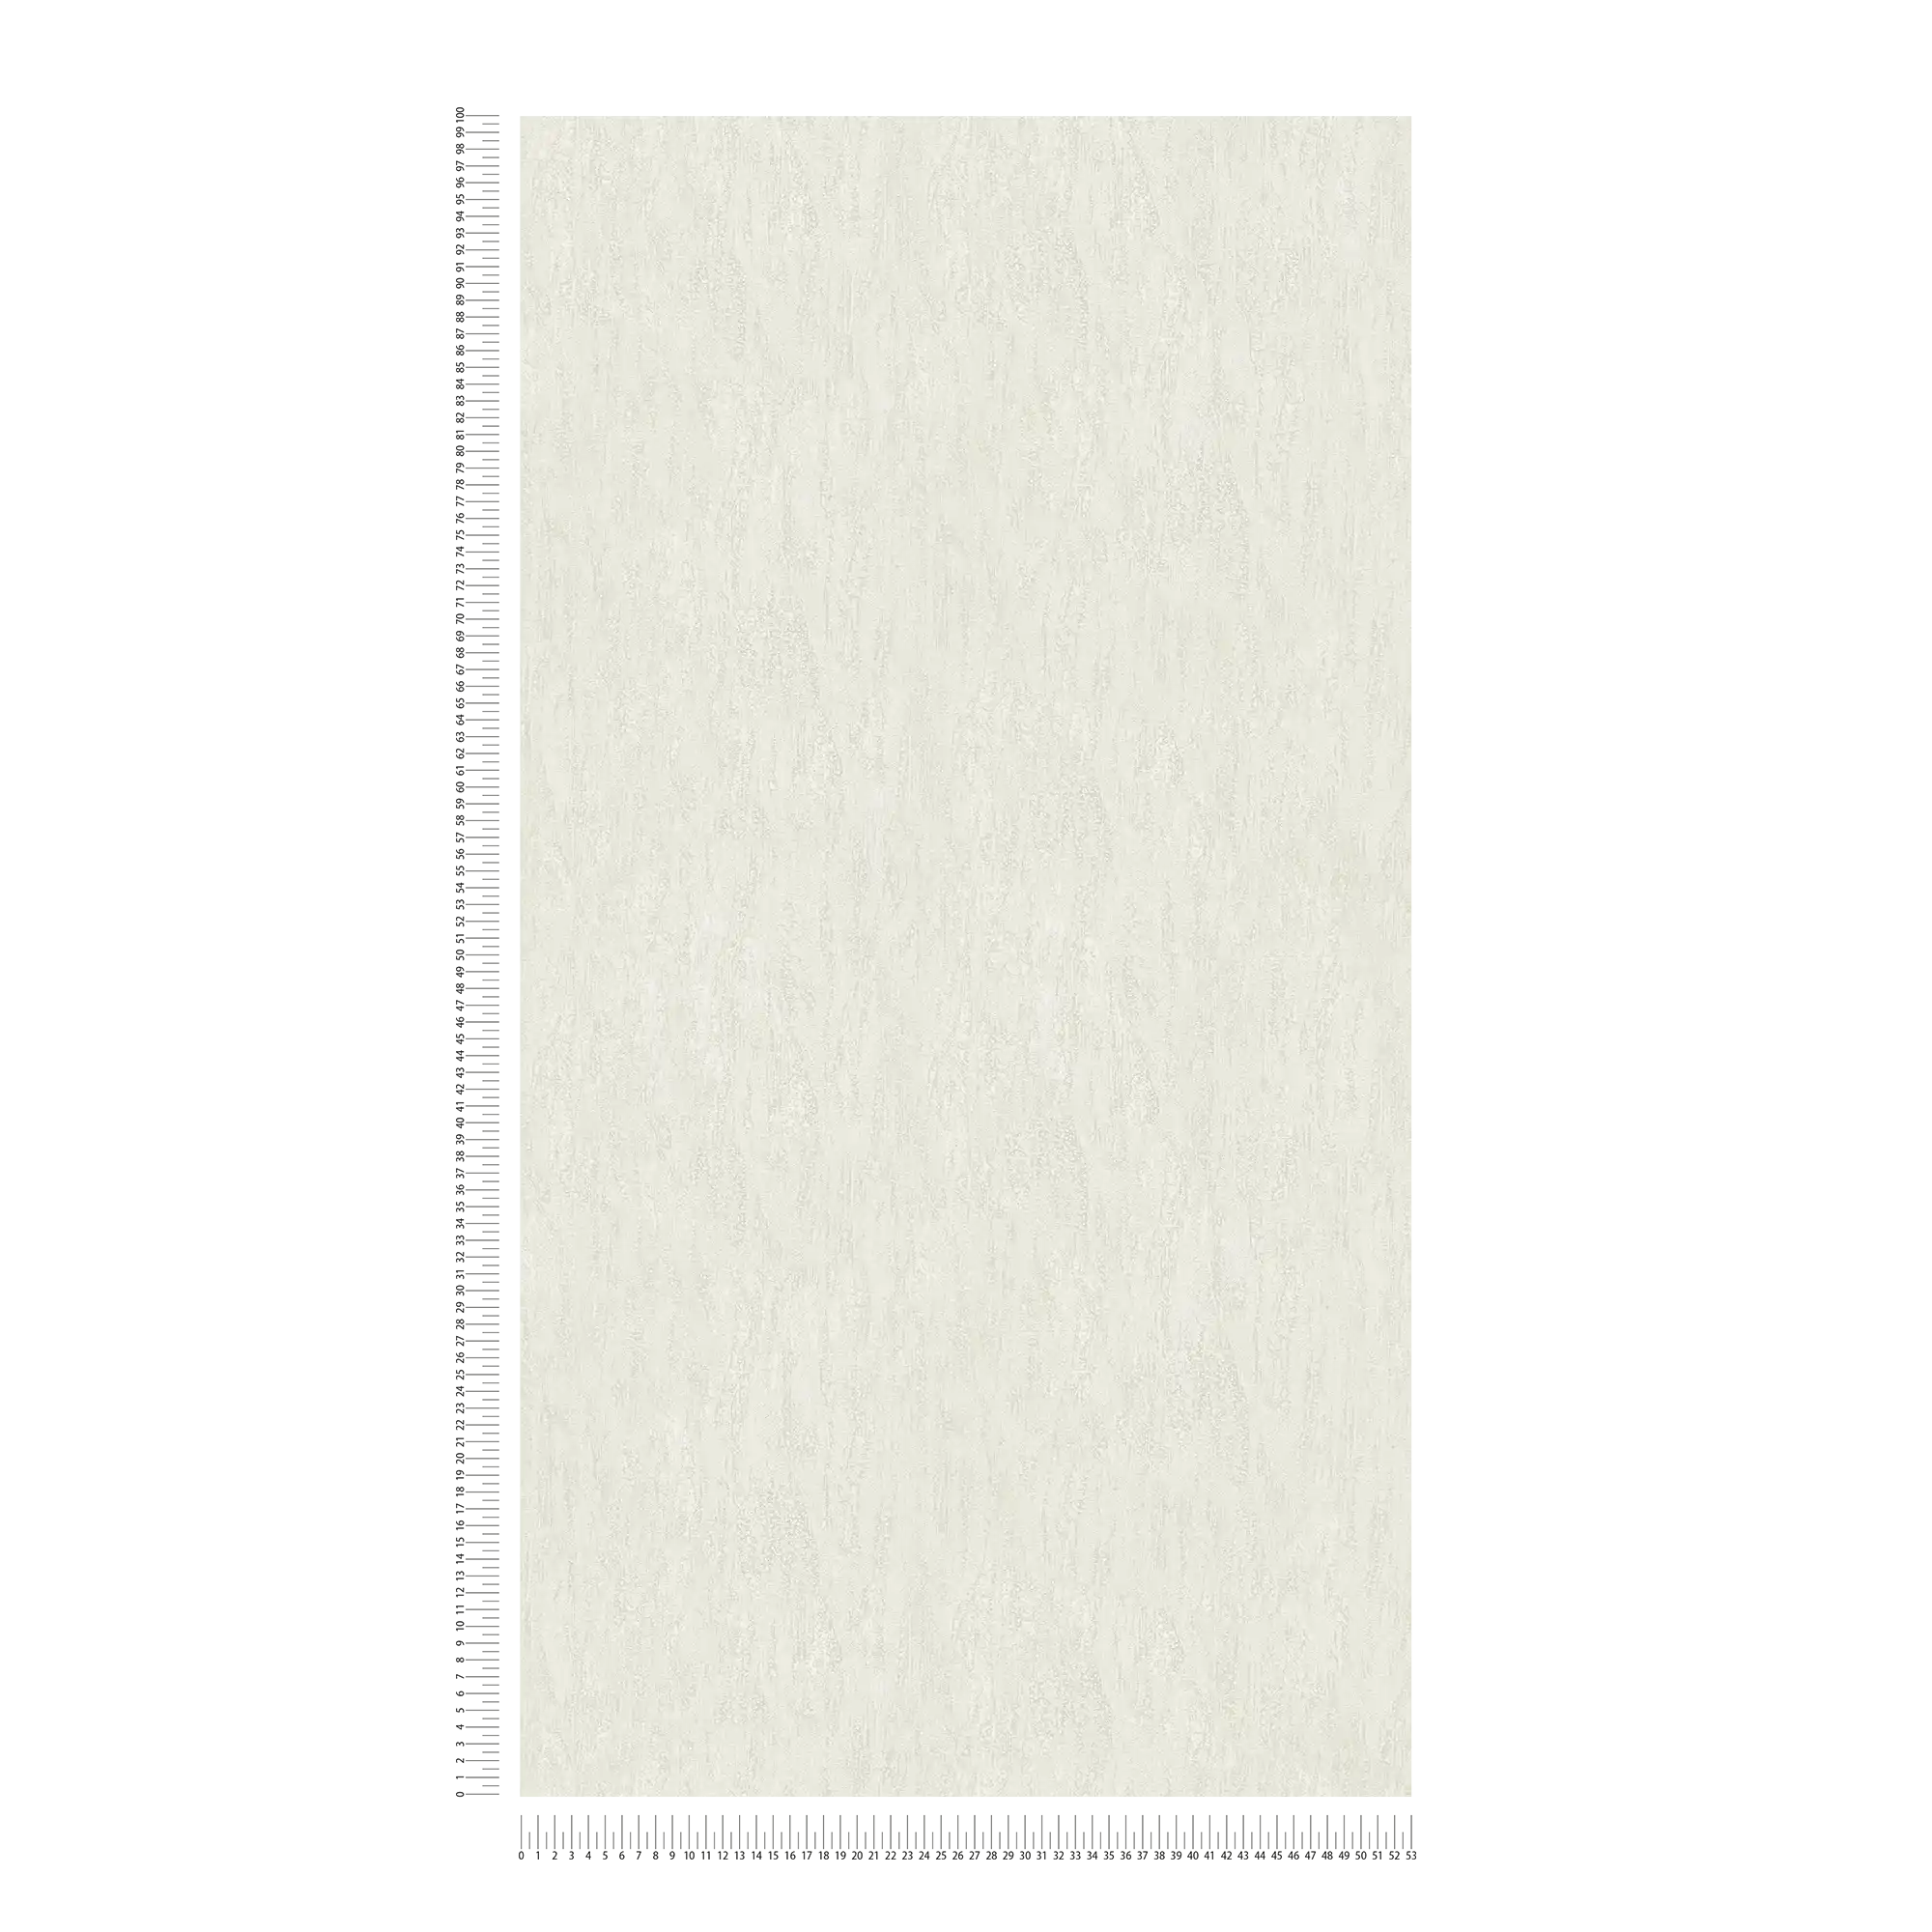             Carta da parati testurizzata con motivo a rilievo naturale in tinta unita - crema
        